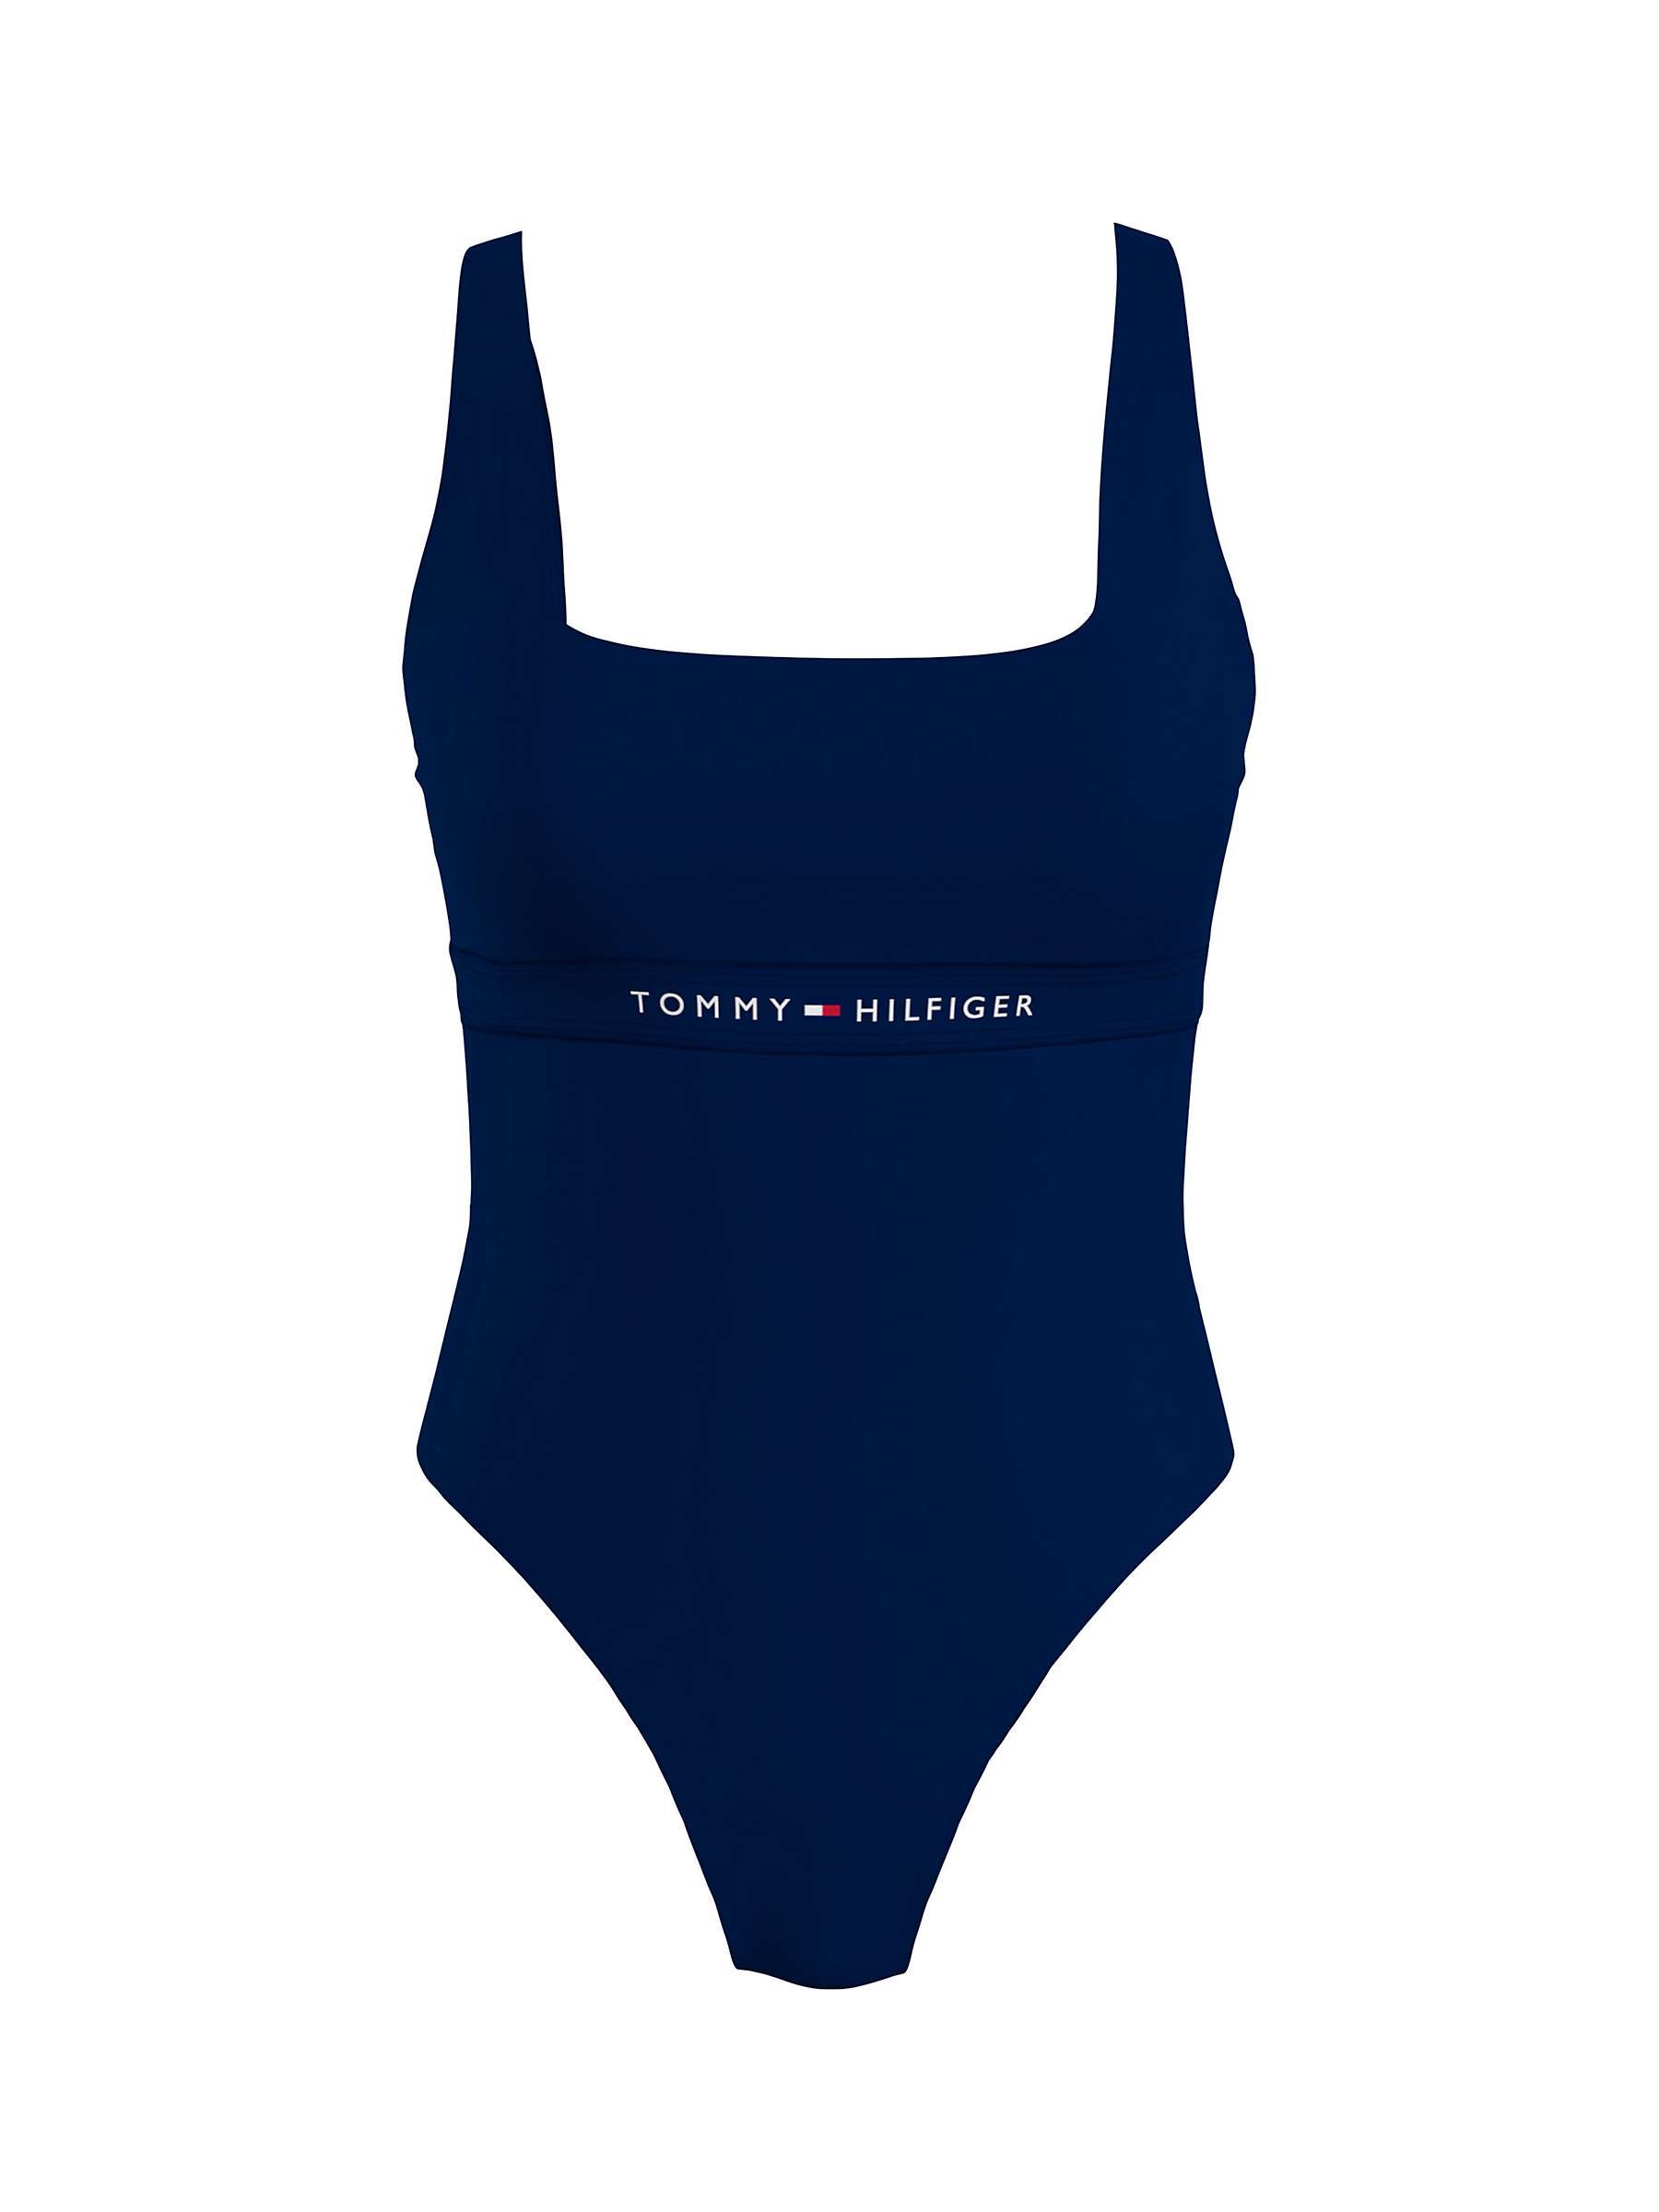 Buy Tommy Hilfiger Swimsuit, Desert Sky Online at johnlewis.com